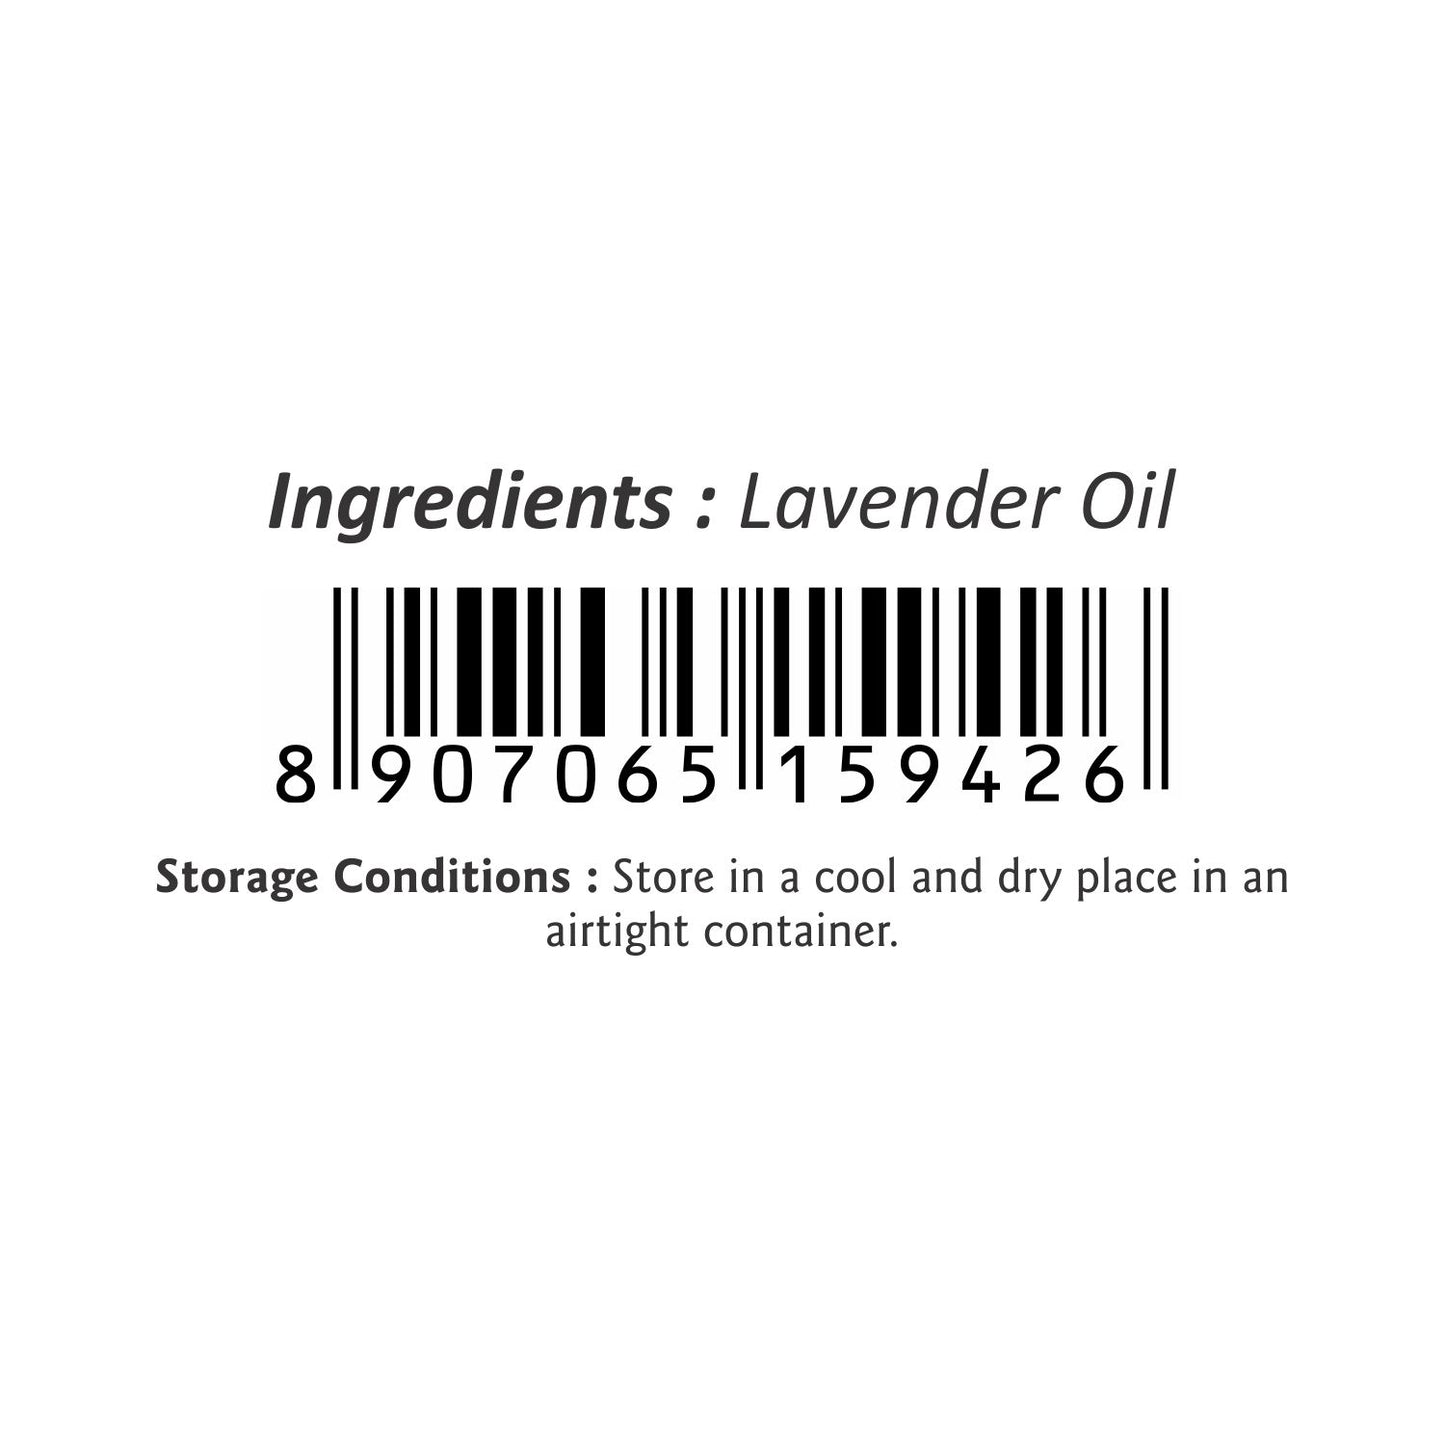 Puramio Lavender Essential Oil [Undiluted]100% Natural & Pure, 30ml